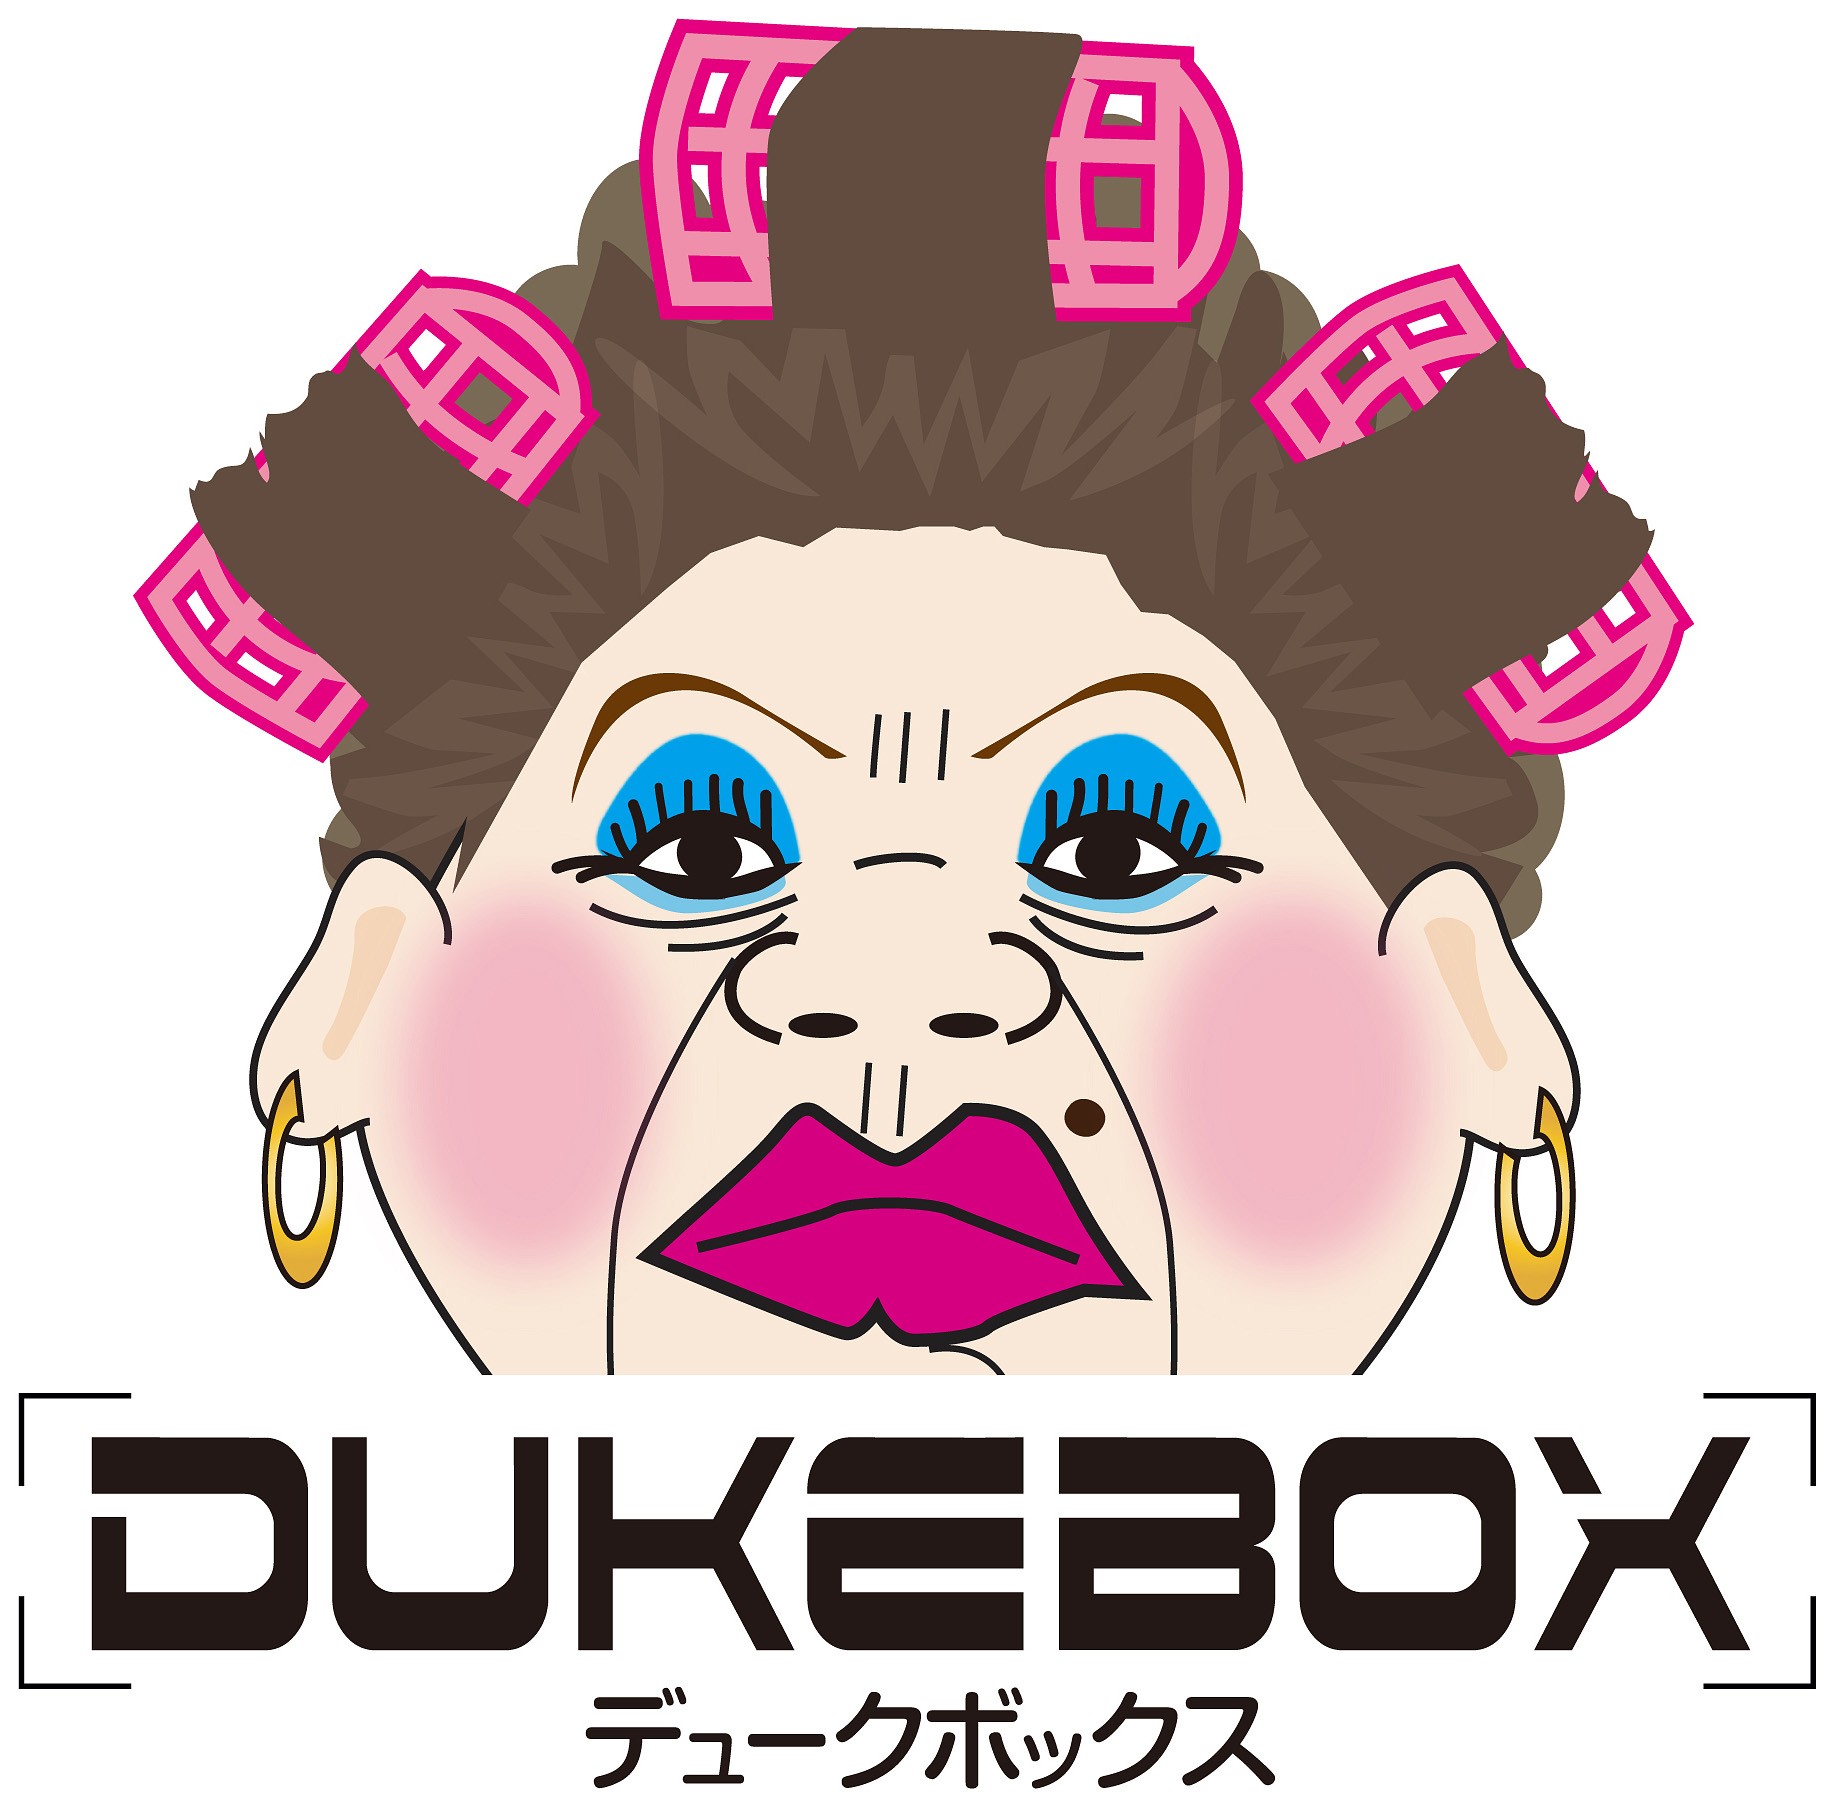 大阪のおばちゃん Dukebox